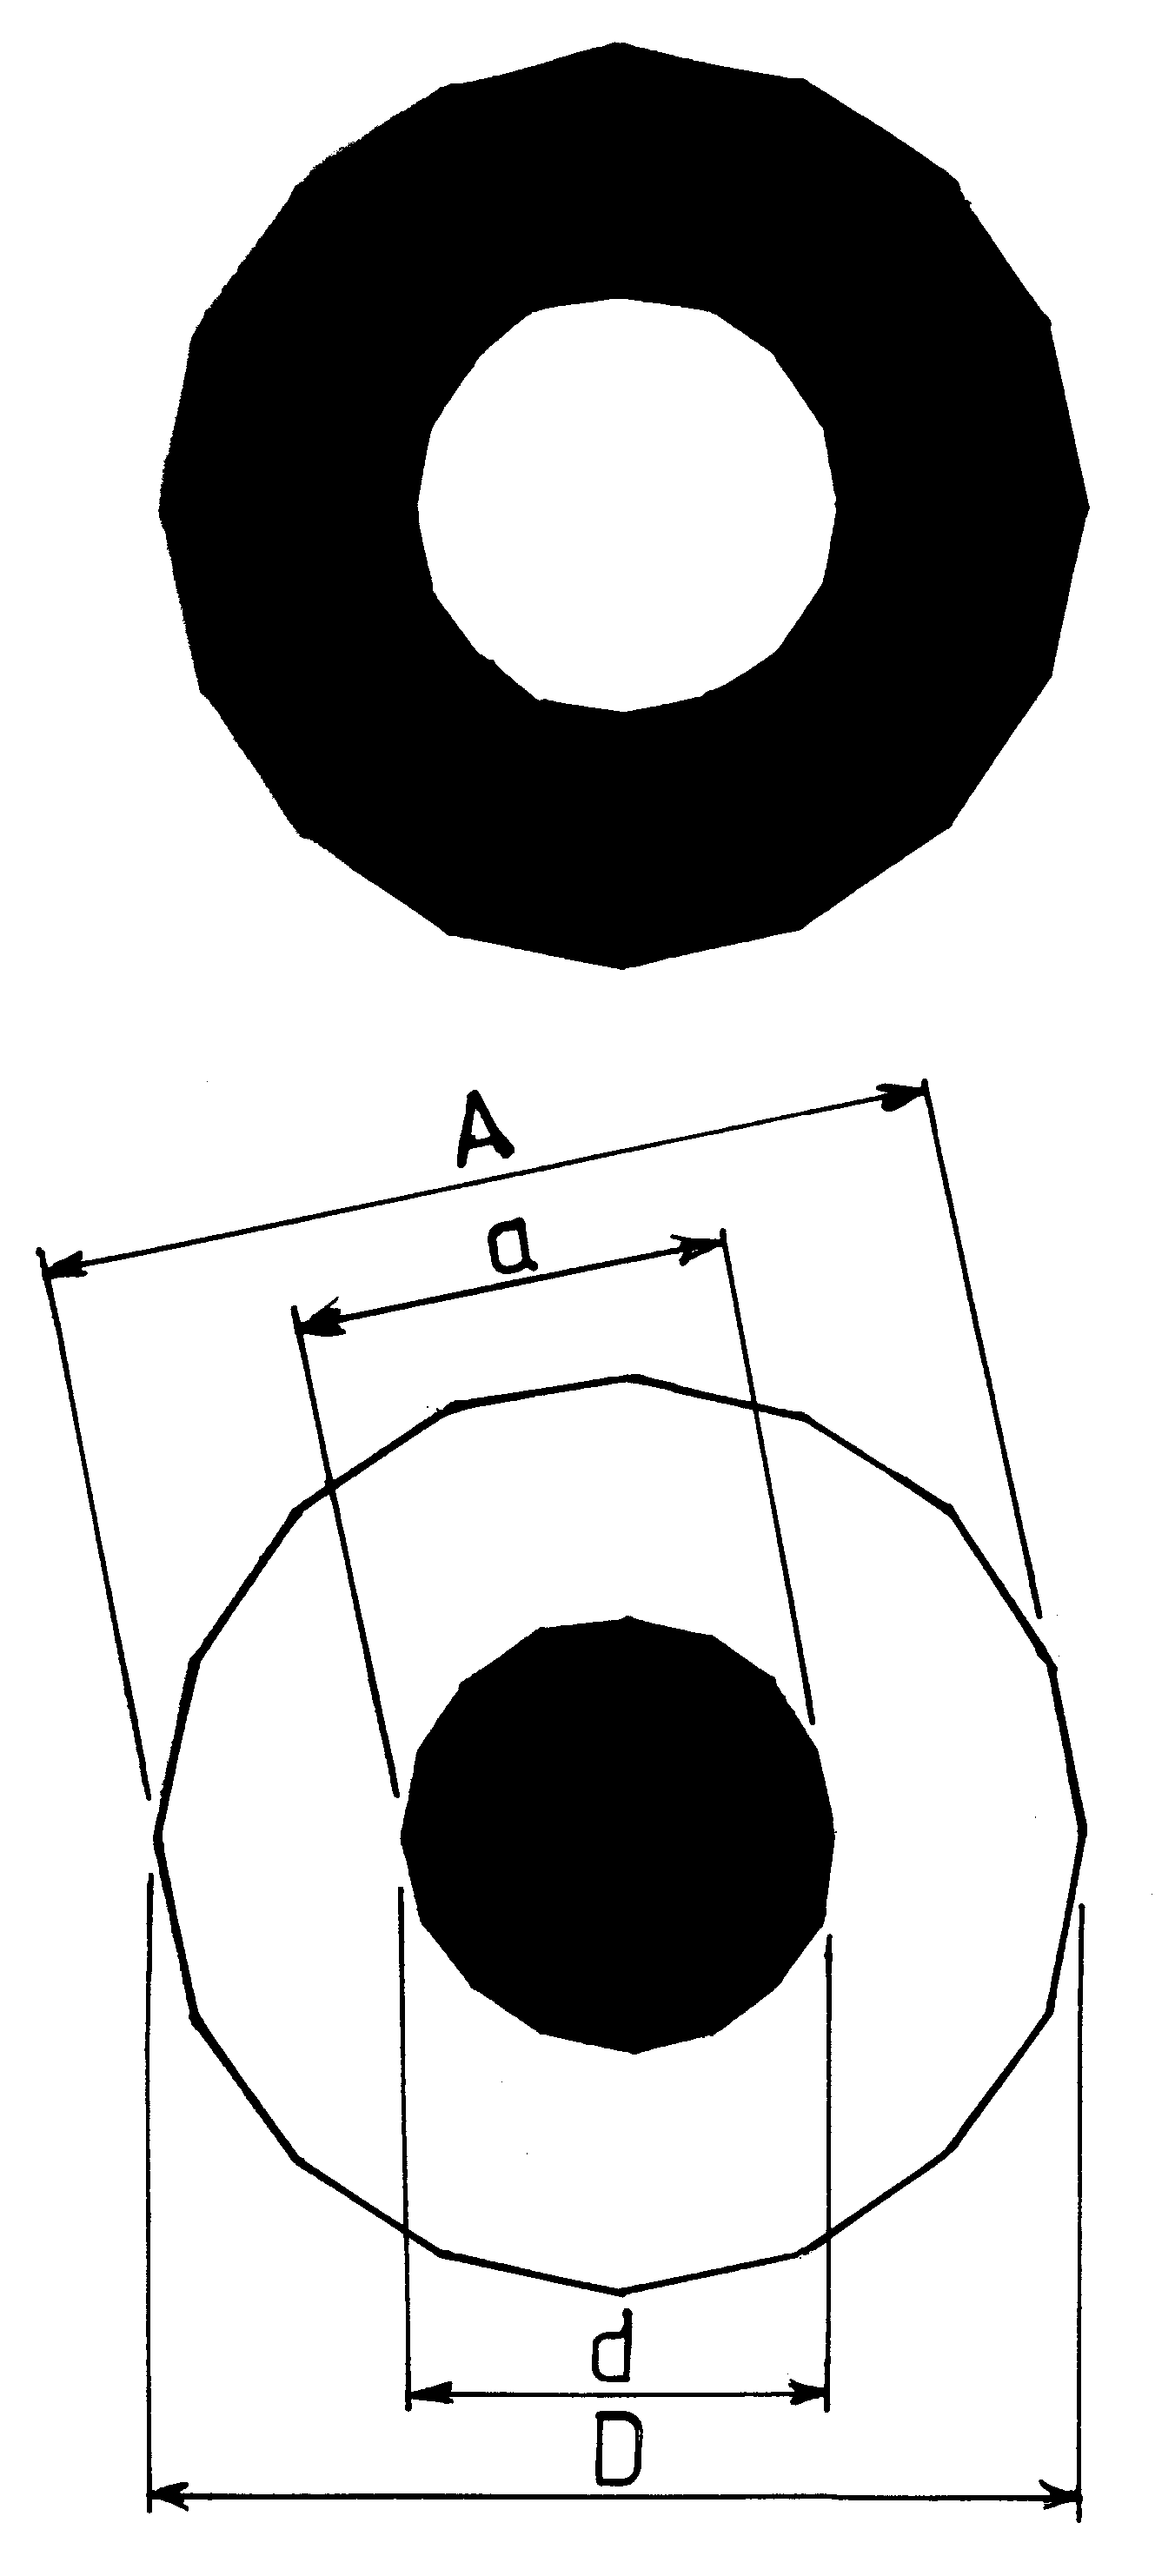 Fig./Rys. C8(3io) in/w [1/3]